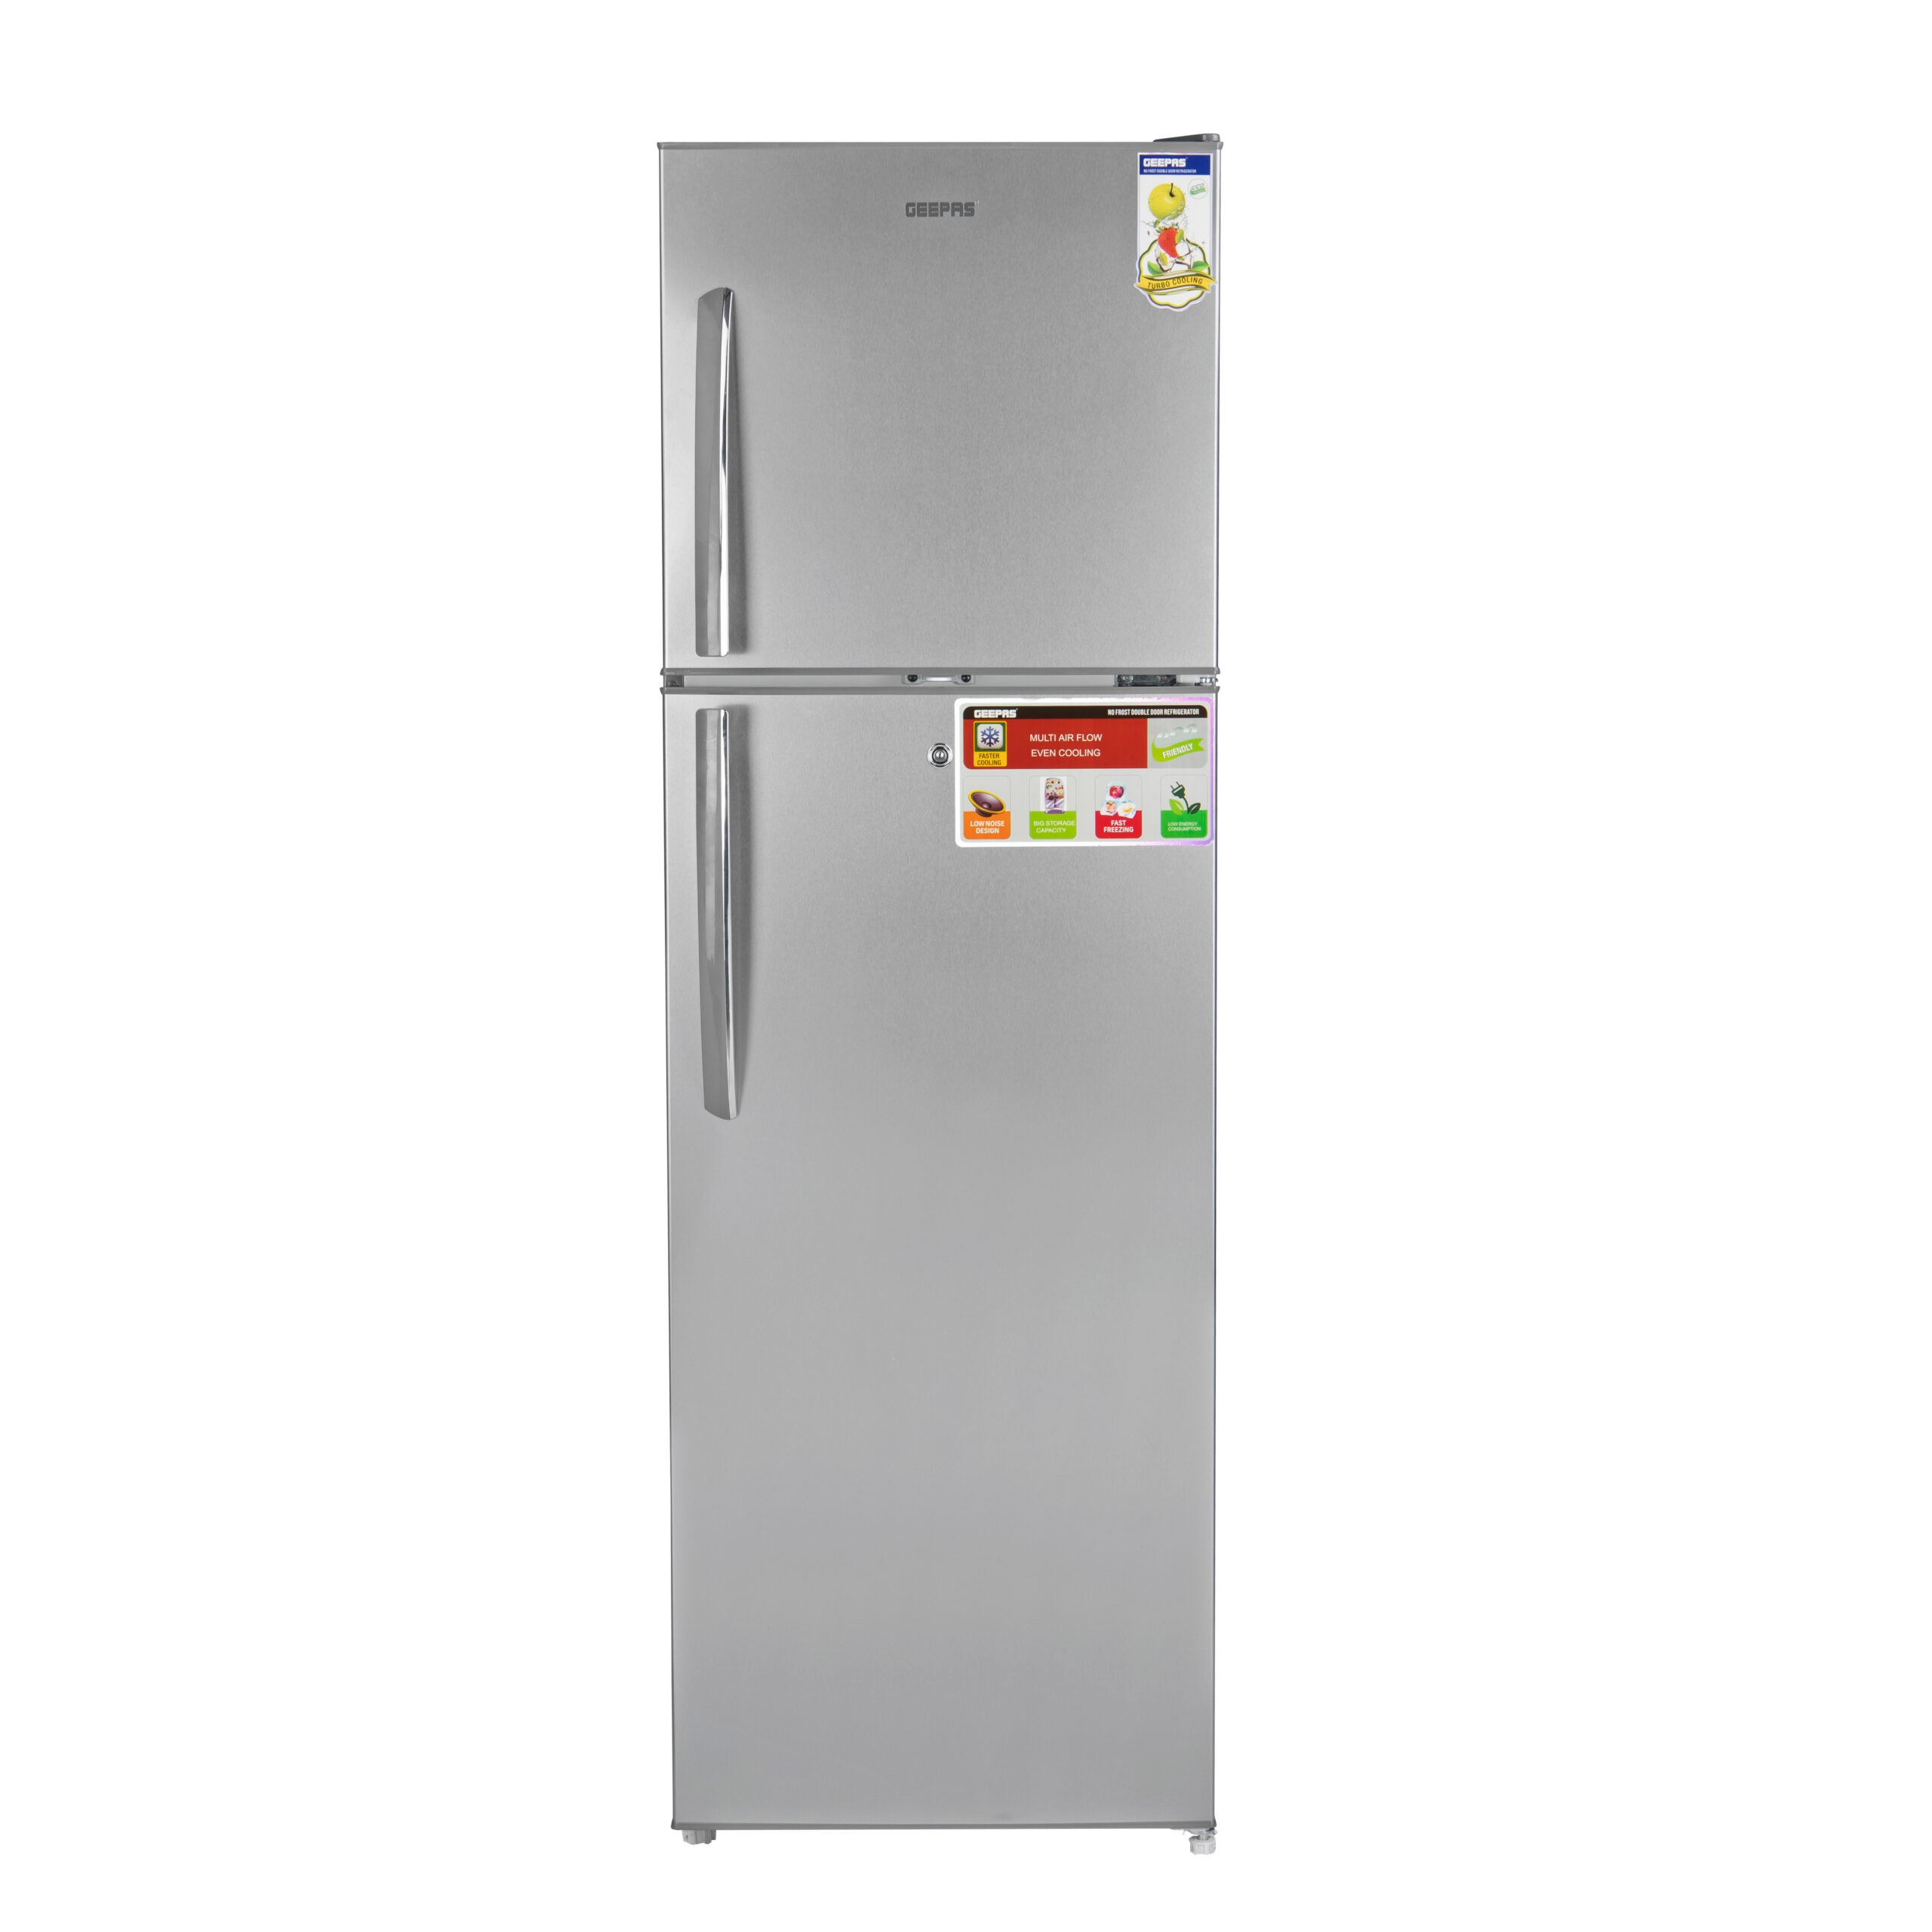 ثلاجة بسعة 320 لتر جيباس Geepas Refrigerator